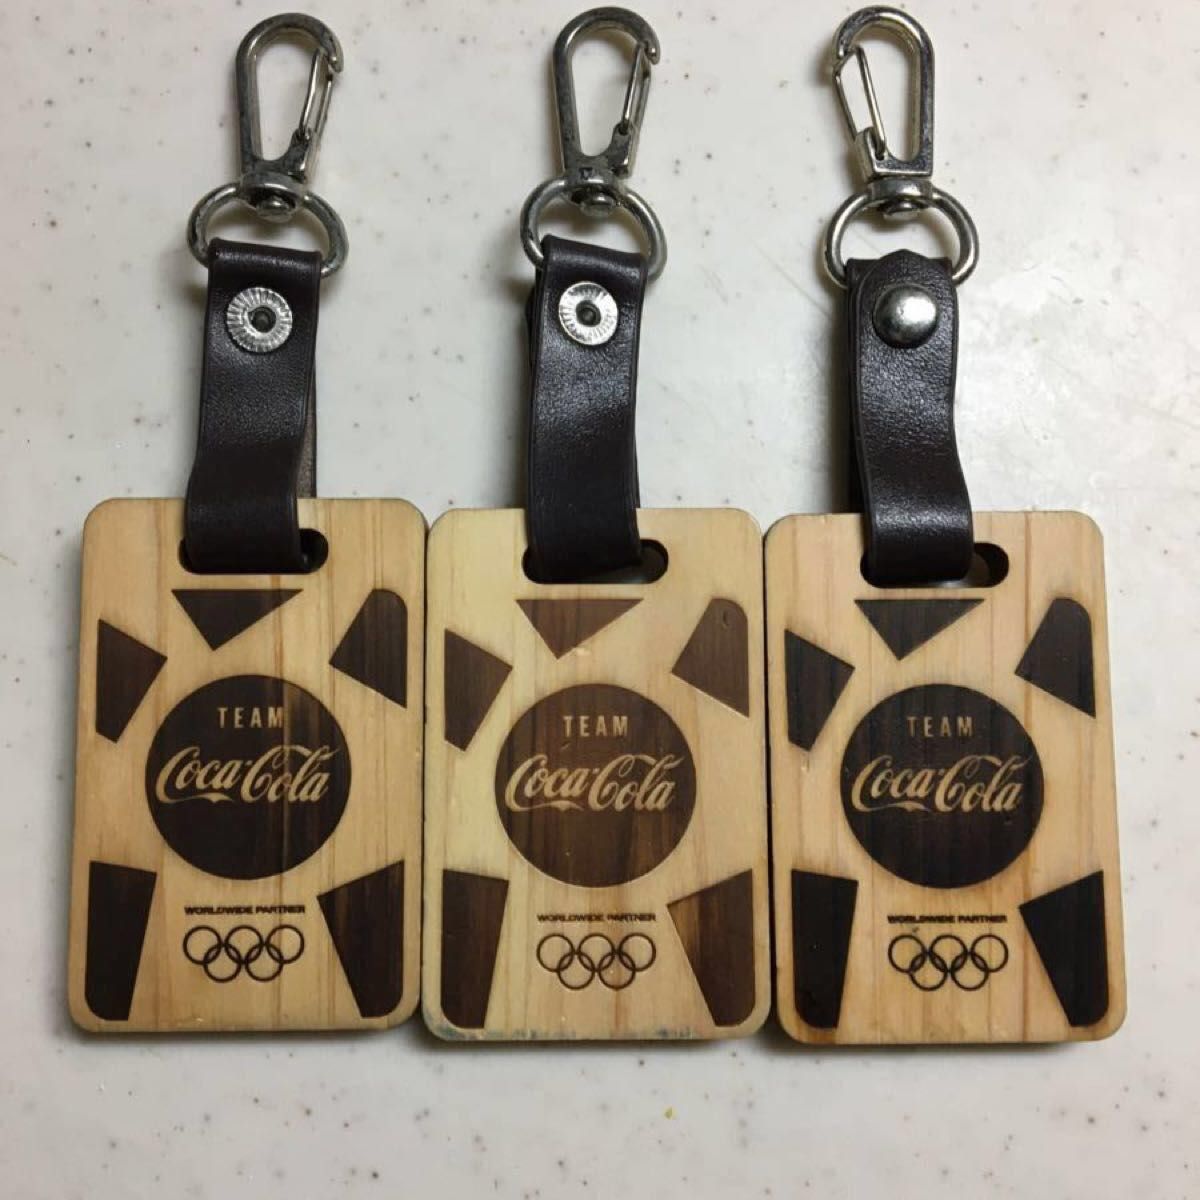 東京2020大会 オリンピック選手団使用キーホルダー　3個セット コカコーラ　ヒノキ　部屋番号入り